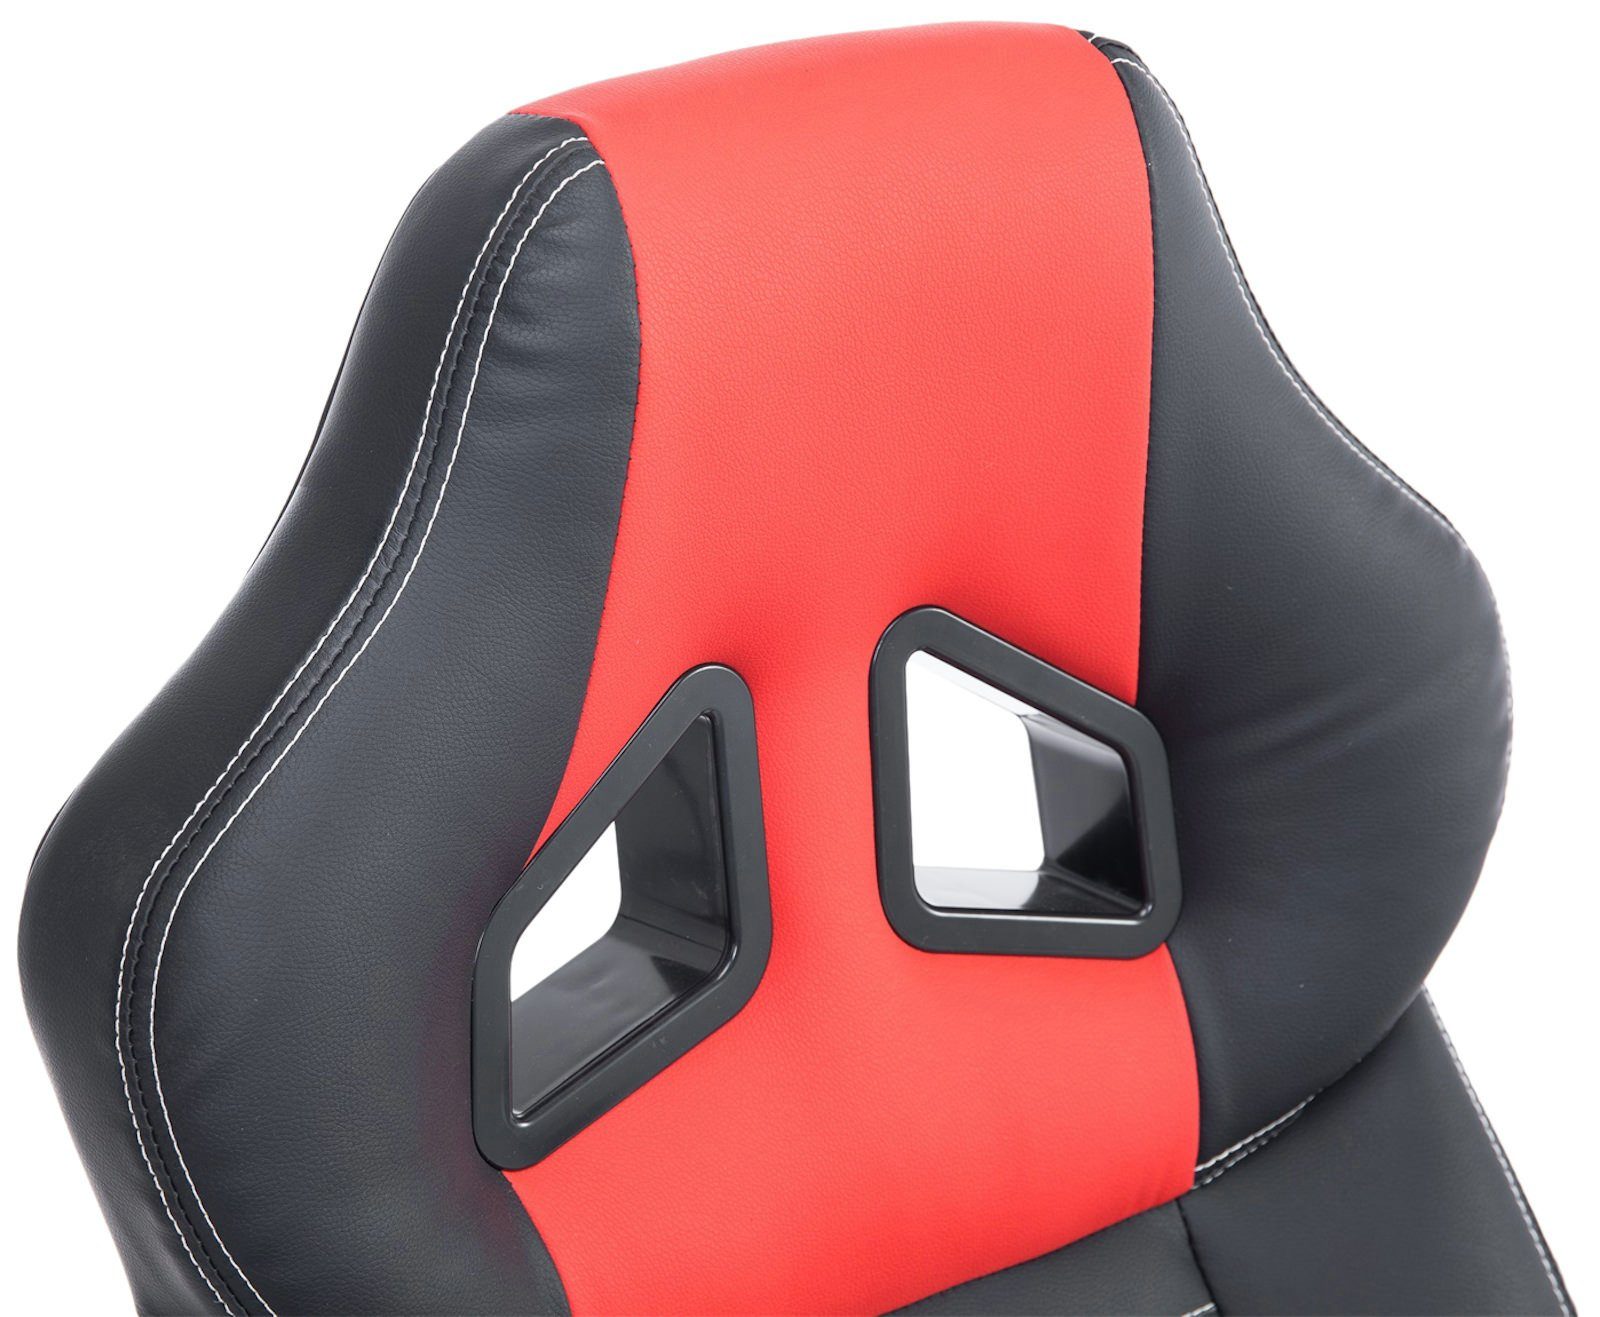 CLP Gaming mit schwarz/rot drehbar Chair Pedro, Höhenverstellung